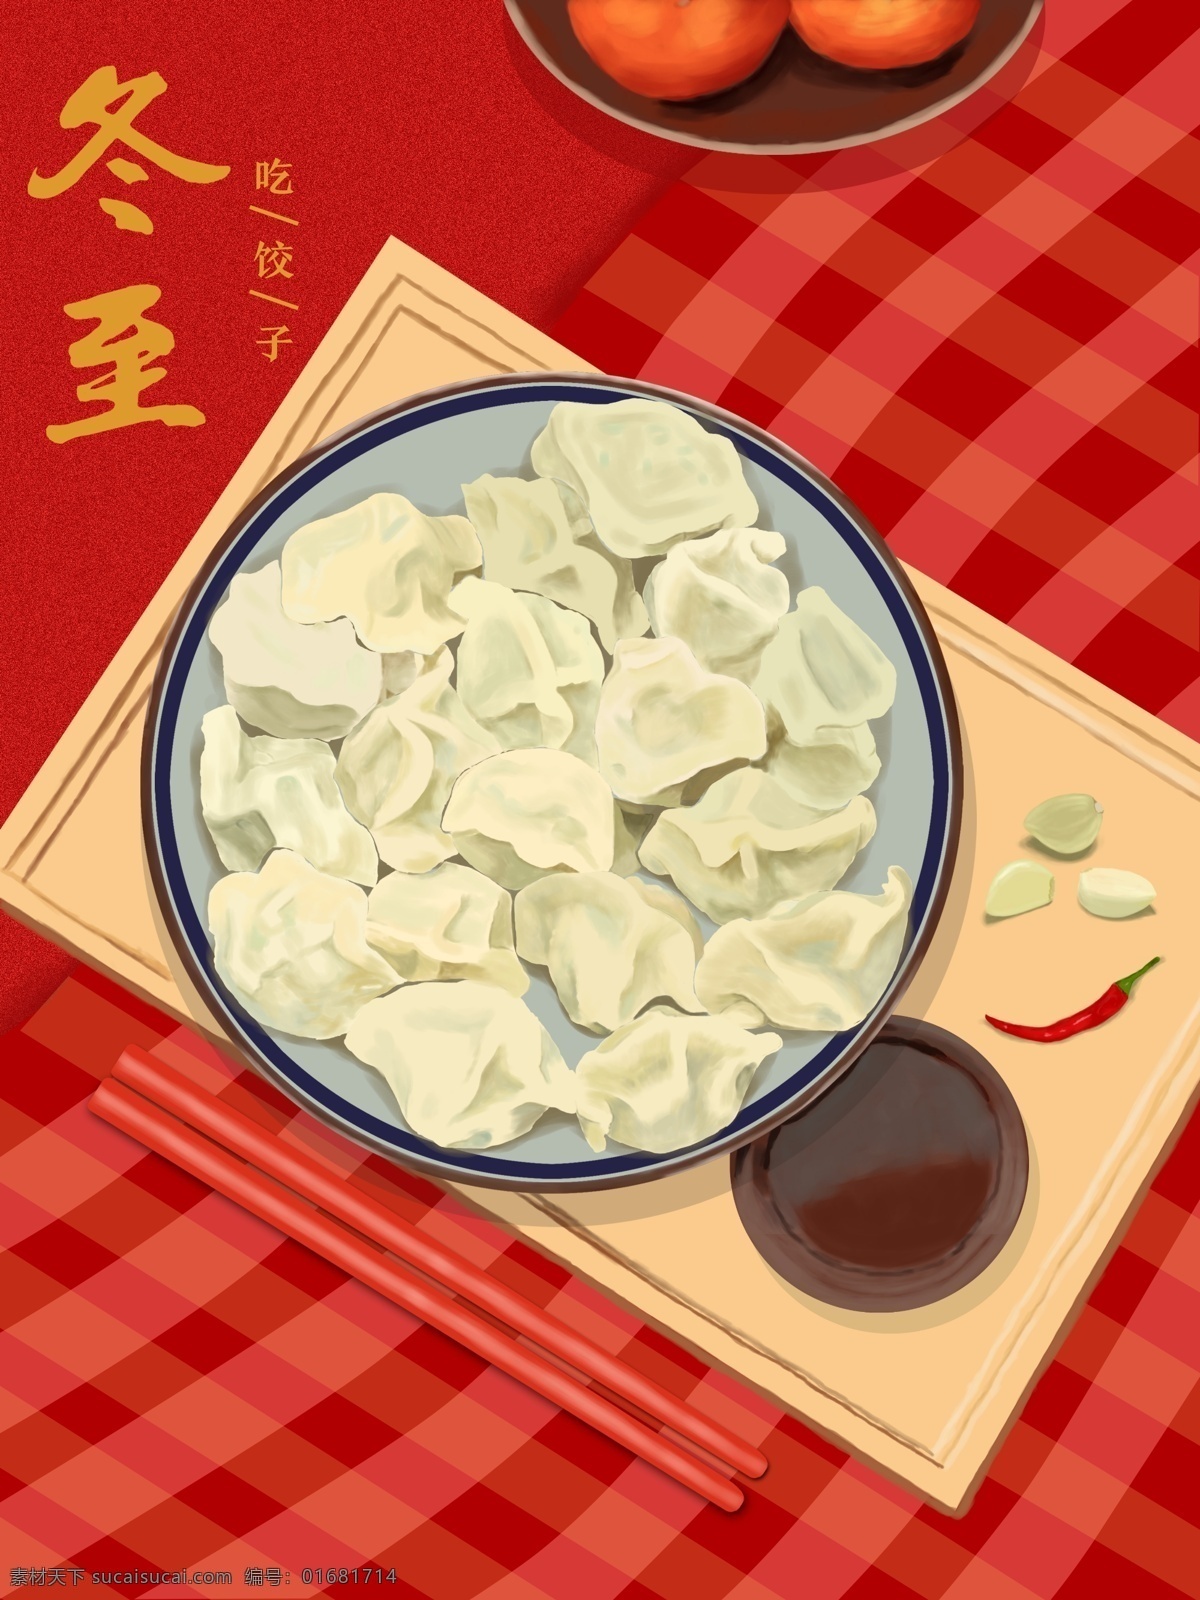 冬至 吃 饺子 二十四节气 酱料 节日 写实风 蒜头